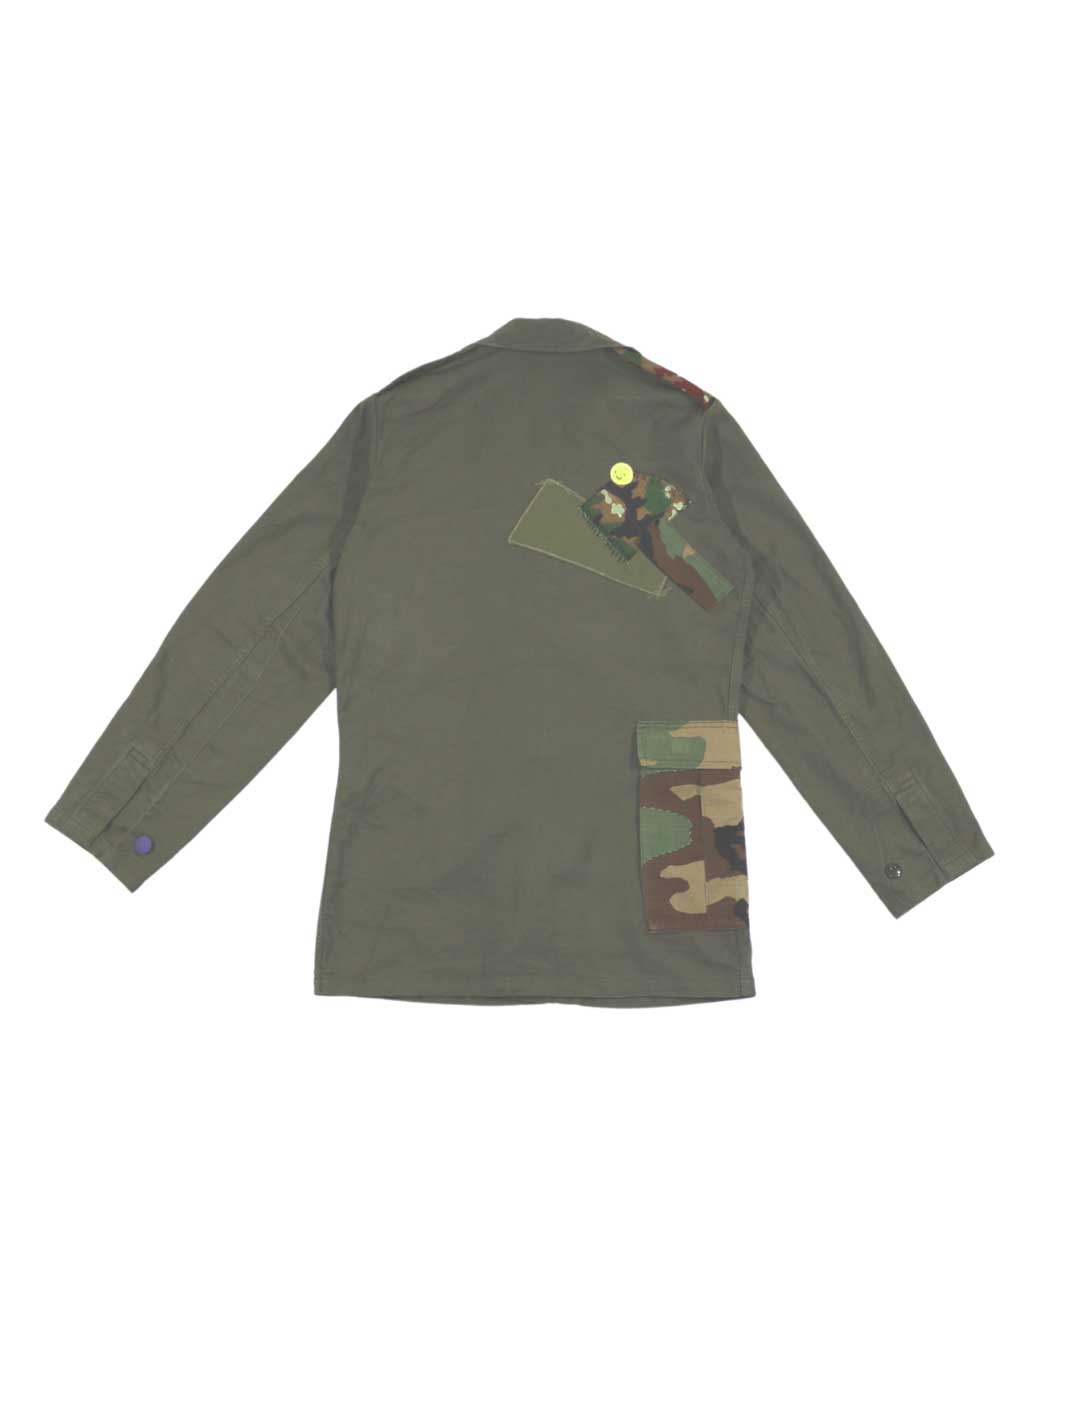 Unisex Overshirt Größe M olive mit diversen Applikationen aus Stoff mit Camouflage Muster 100% Baumwolle